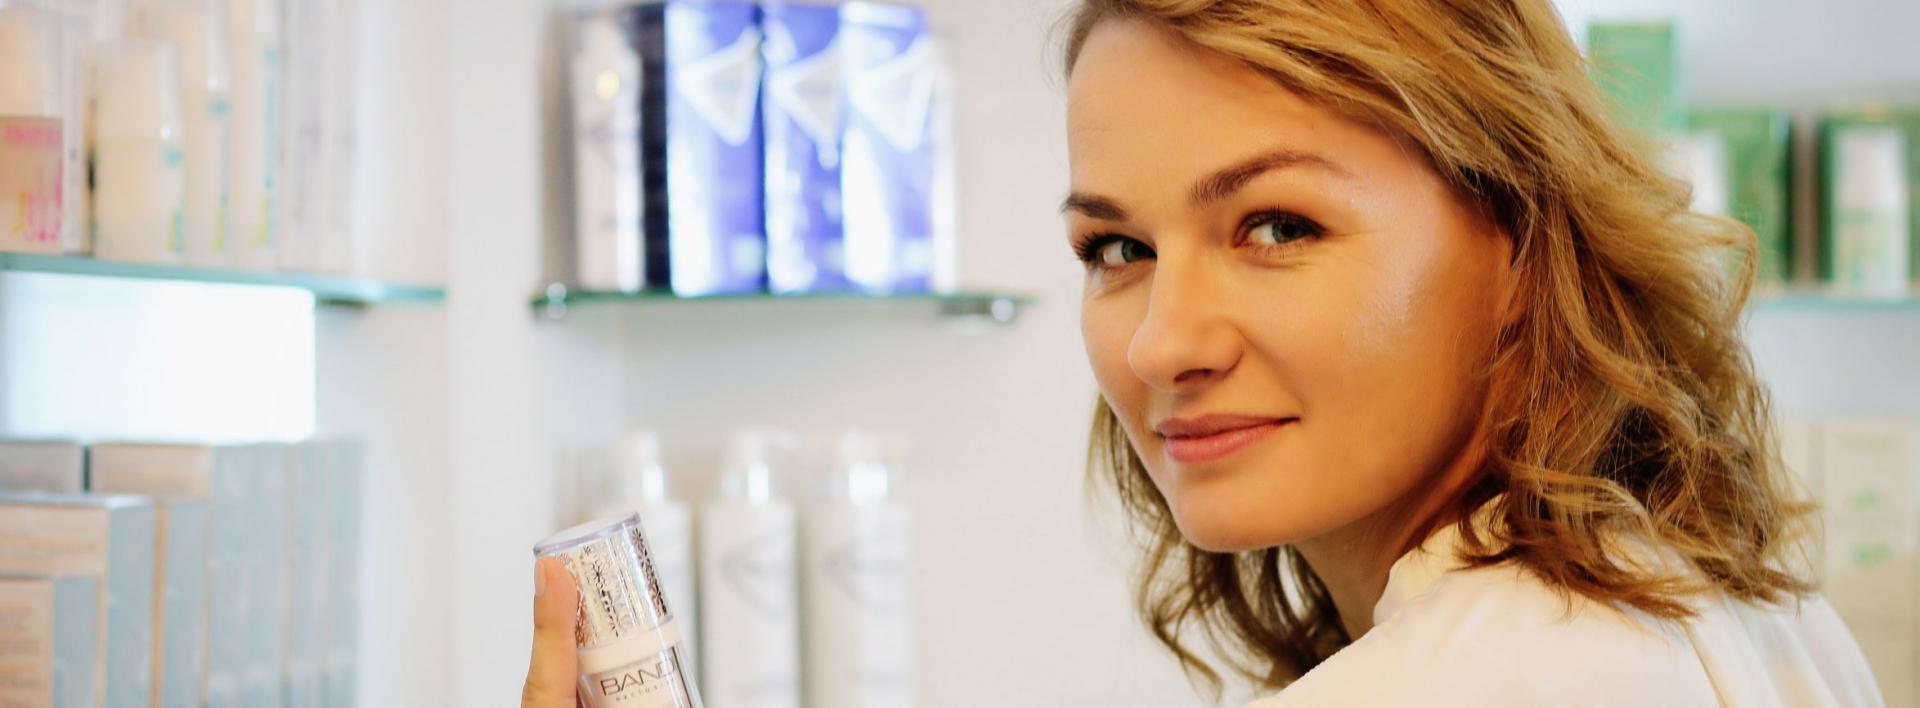 Joanna Draniak-Kicińska, prezes Bandi Cosmetics o wejściu na rynek amerykański